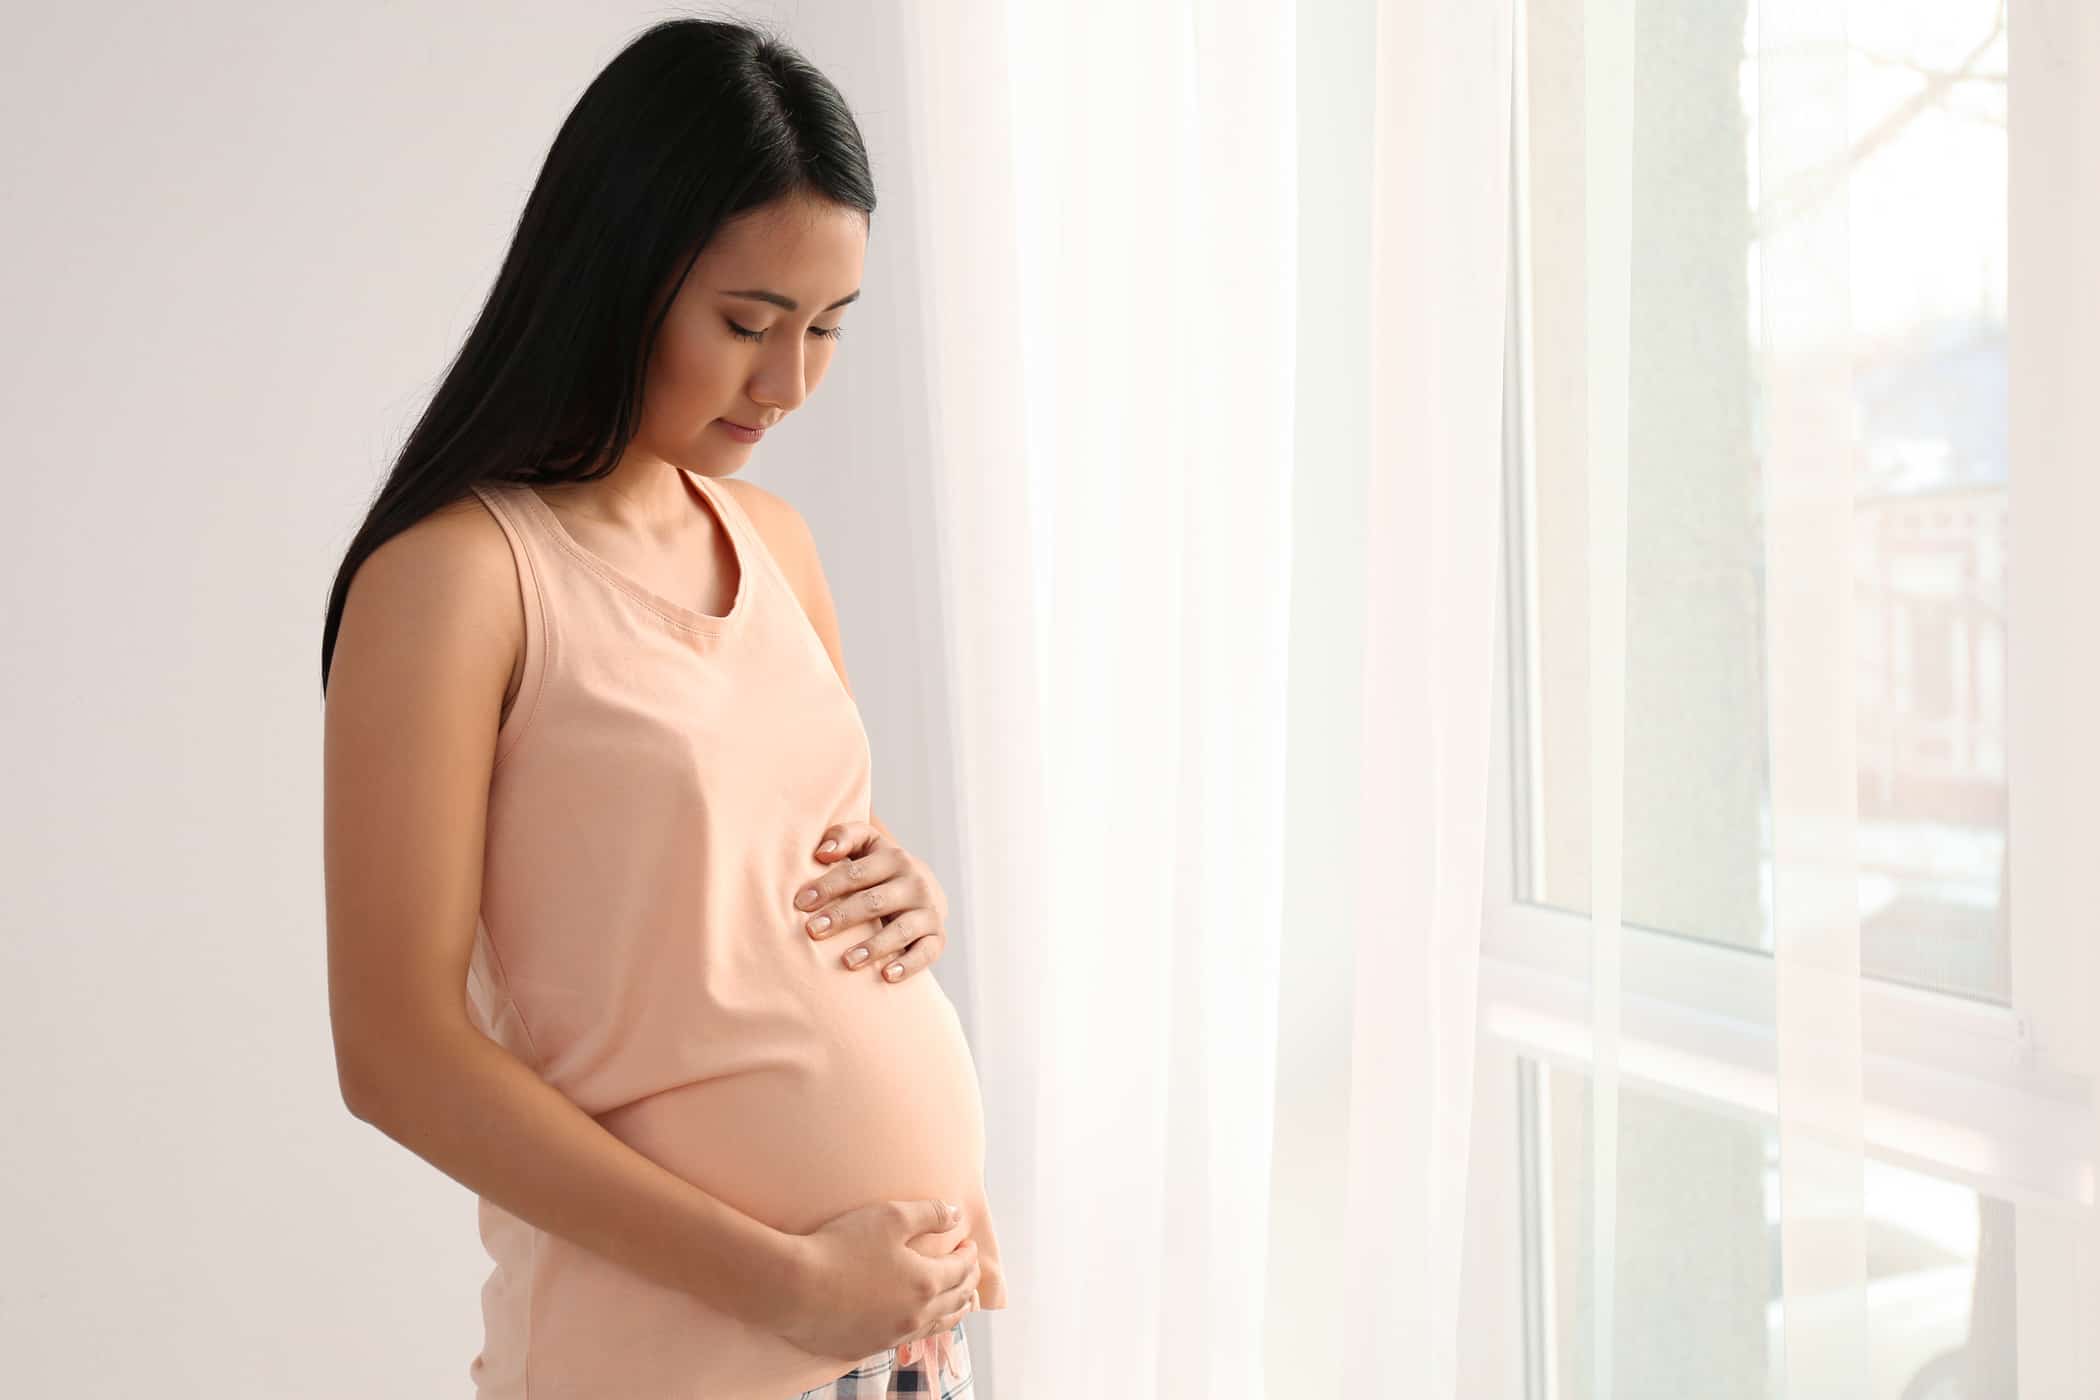 42주 이상 임신한 경우 산모가 겪을 수 있는 합병증의 4가지 위험(임신 후)